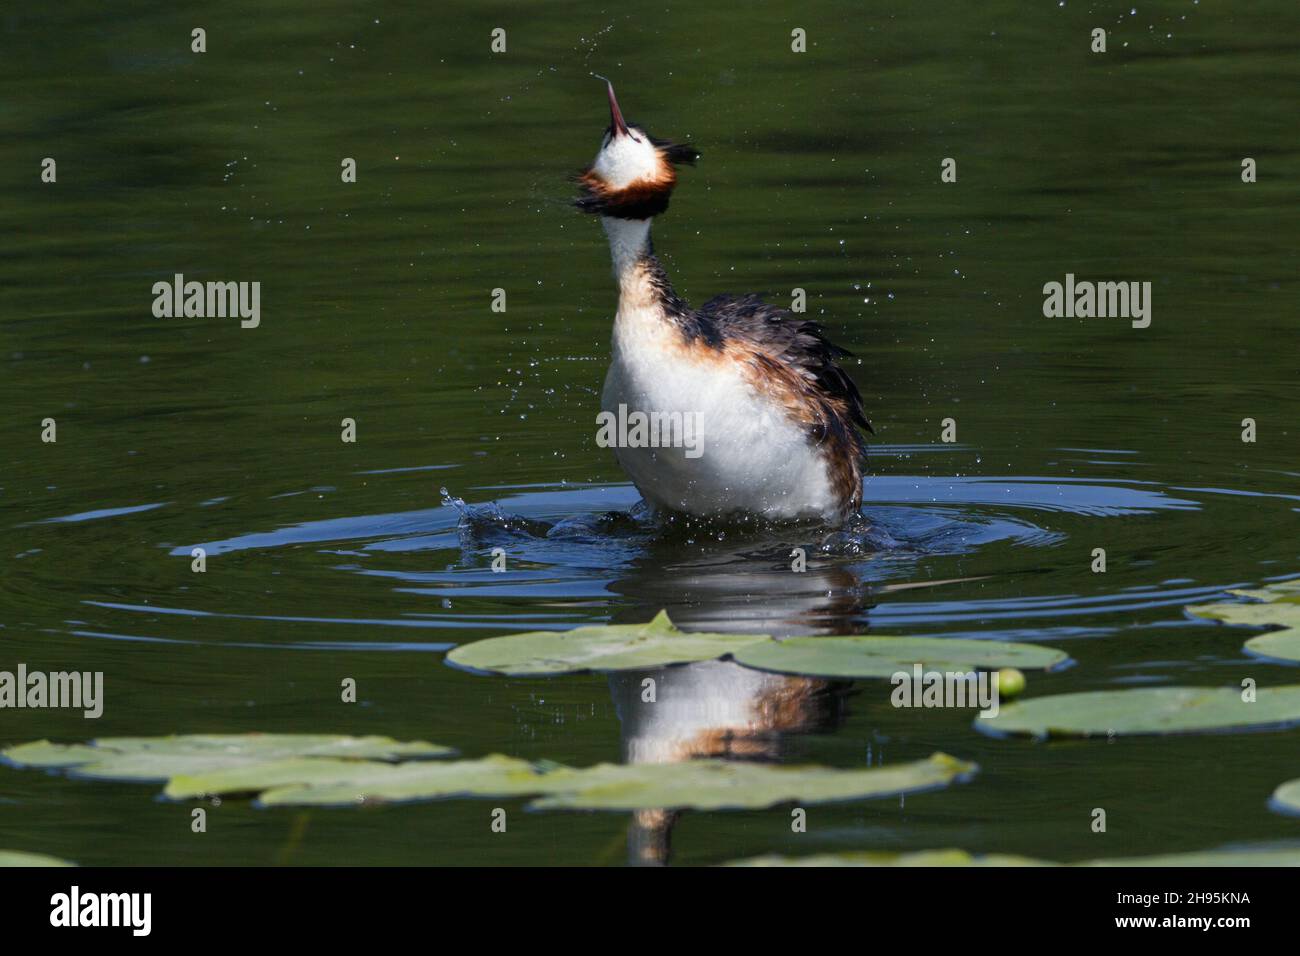 Haubentaucher, (Podiceps cristatus), schüttelt nach dem Tauchen Wasser vom Gefieder, am See, Niedersachsen, Deutschland Stockfoto